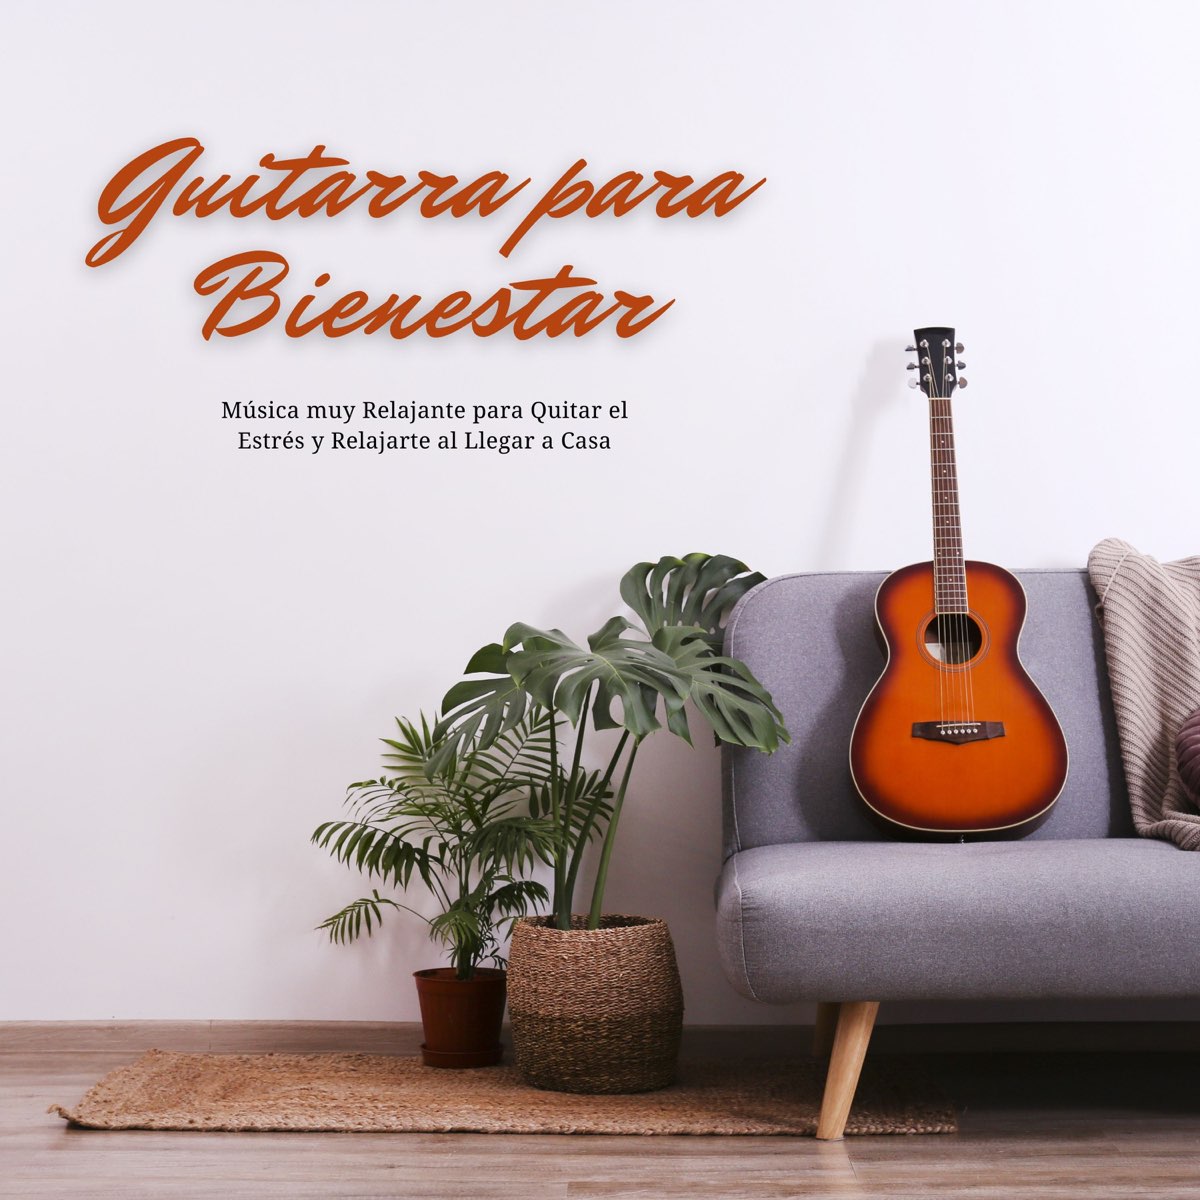 Guitarra para Bienestar - Música muy Relajante para Quitar el Estrés y  Relajarte al Llegar a Casa de Dormir Esmeralda en Apple Music